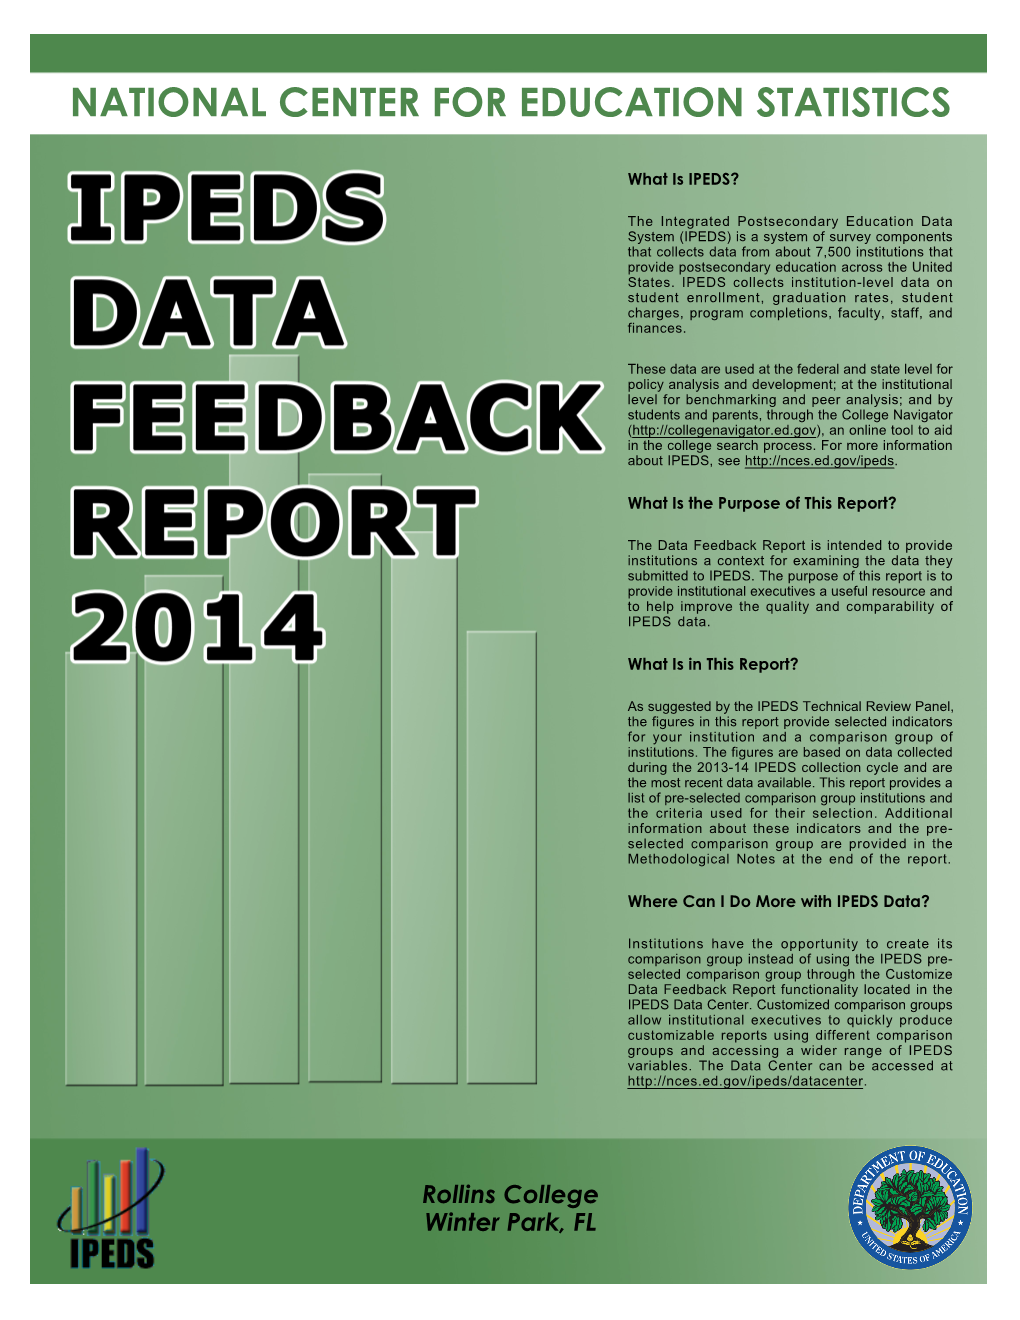 IPEDS Report 2014